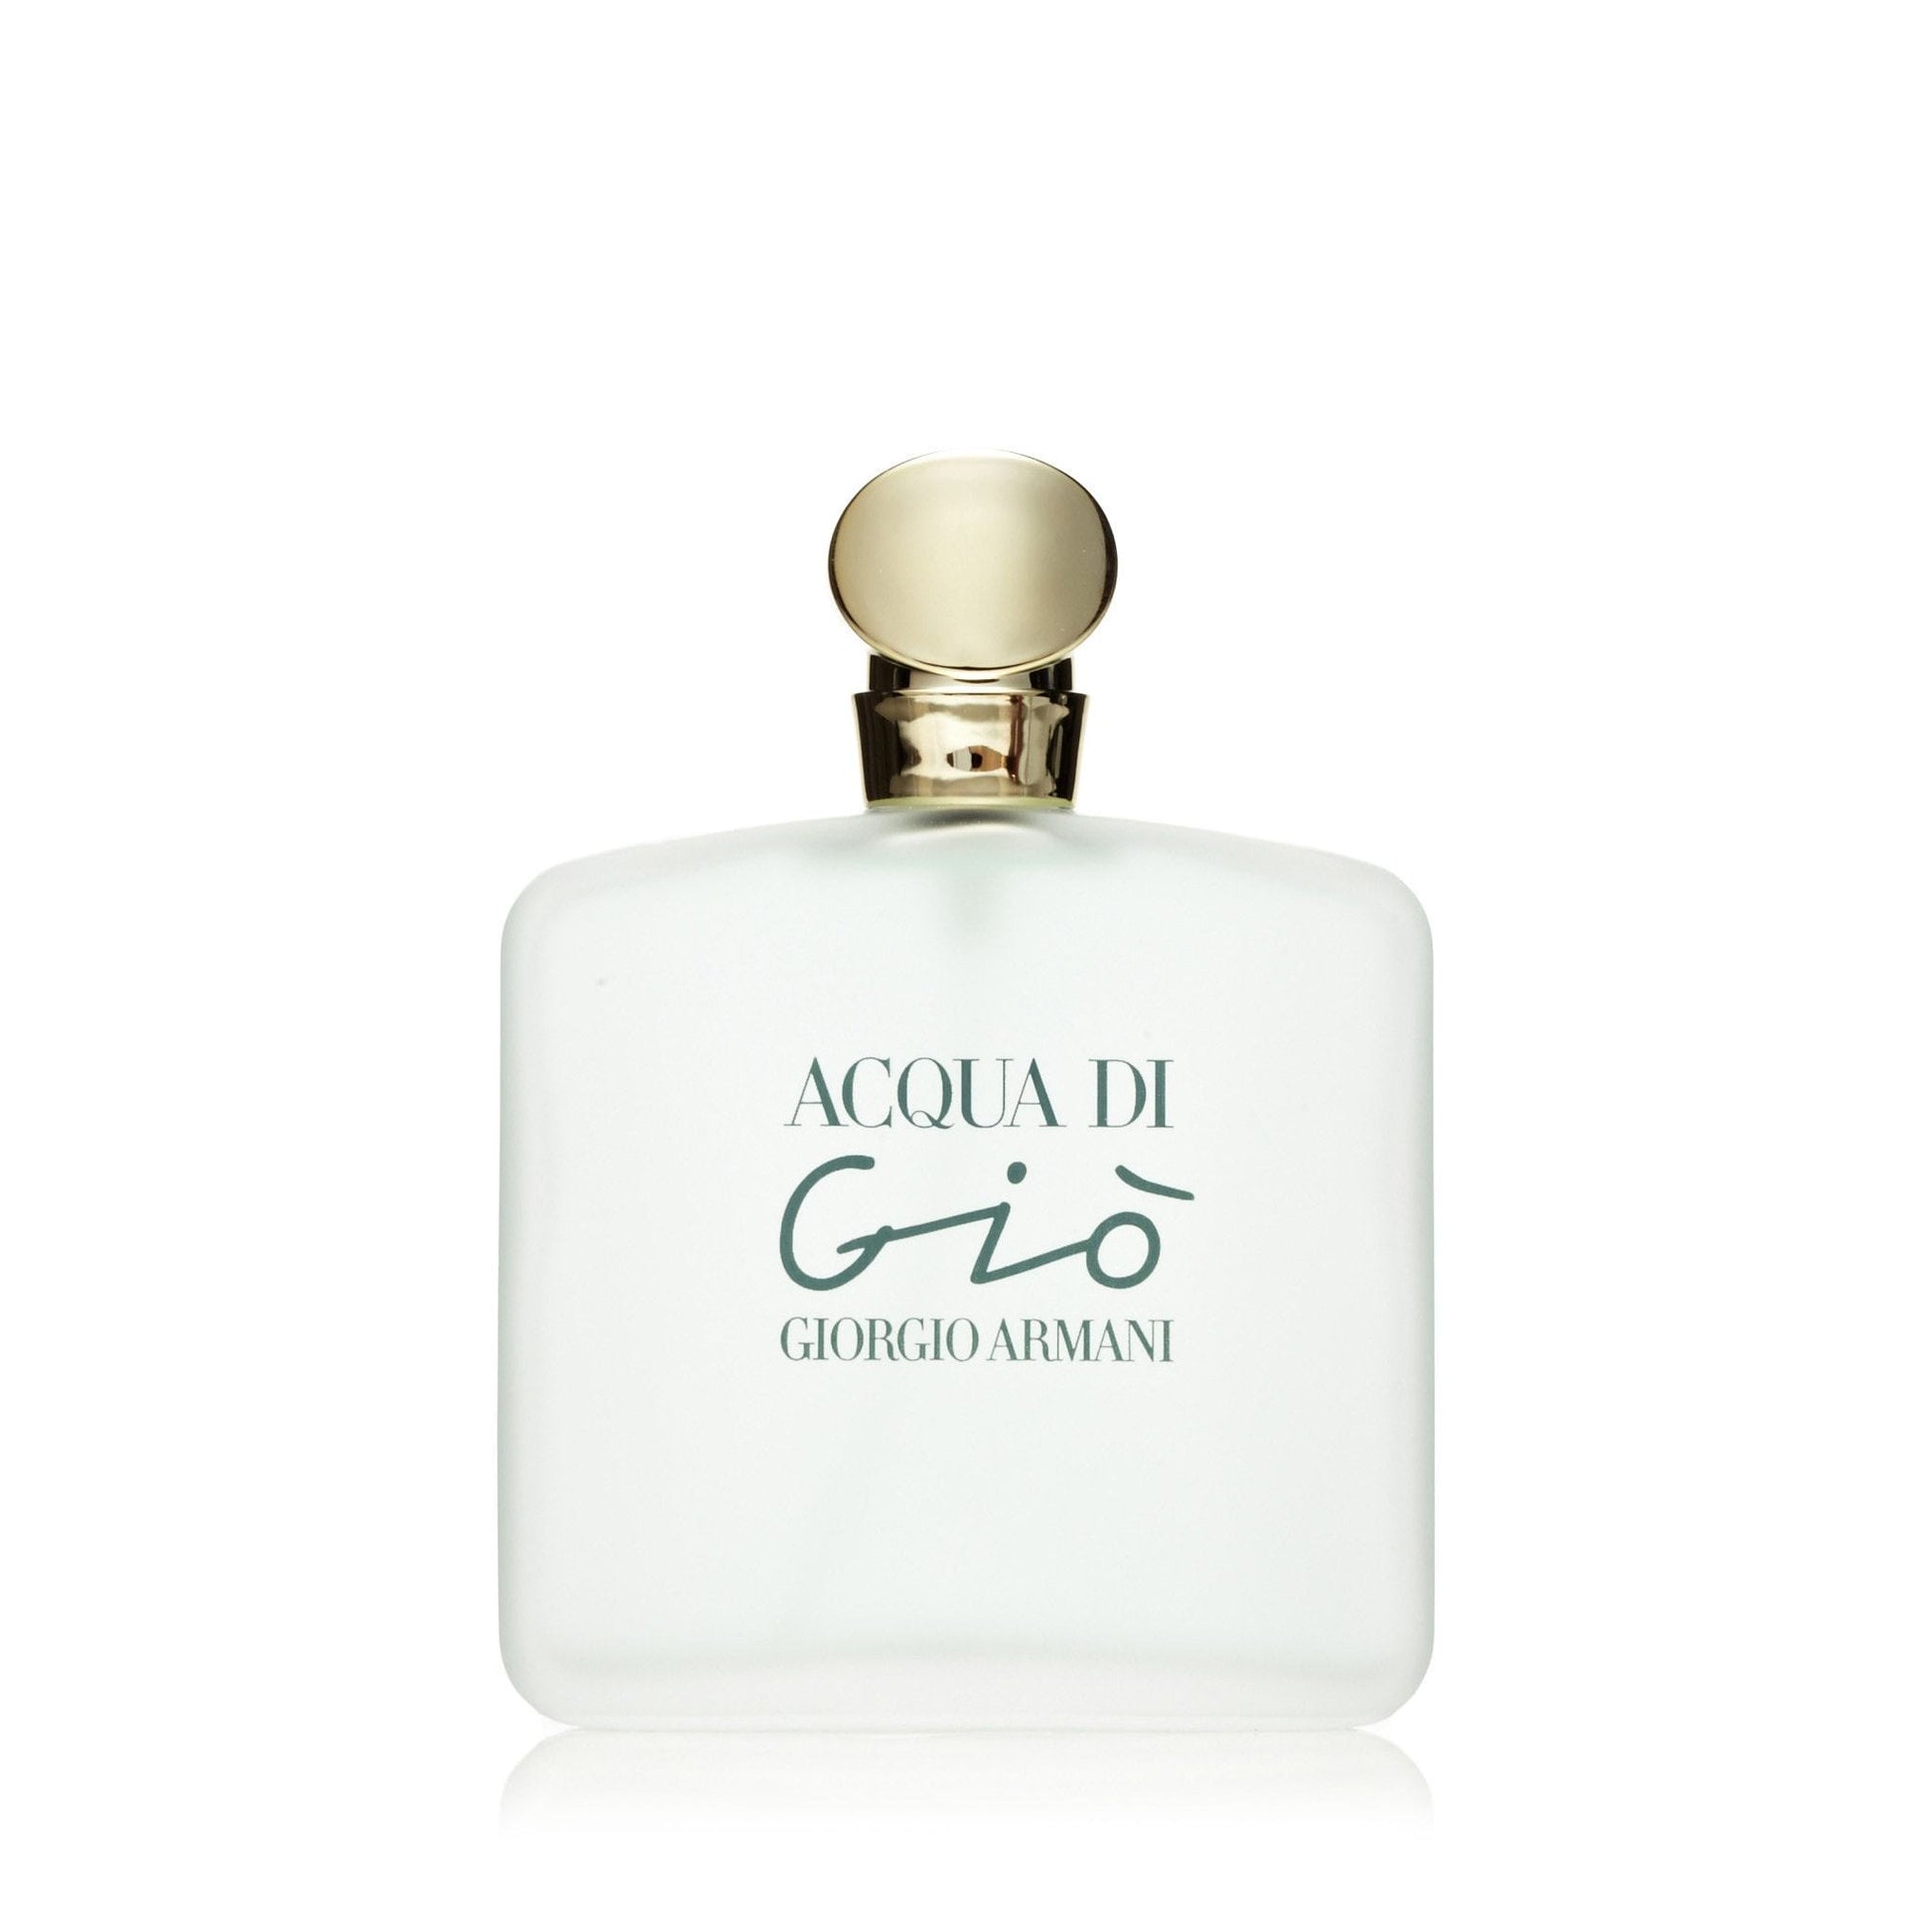 Acqua Di Gio Eau de Toilette Spray for Women by Giorgio Armani, Product image 2